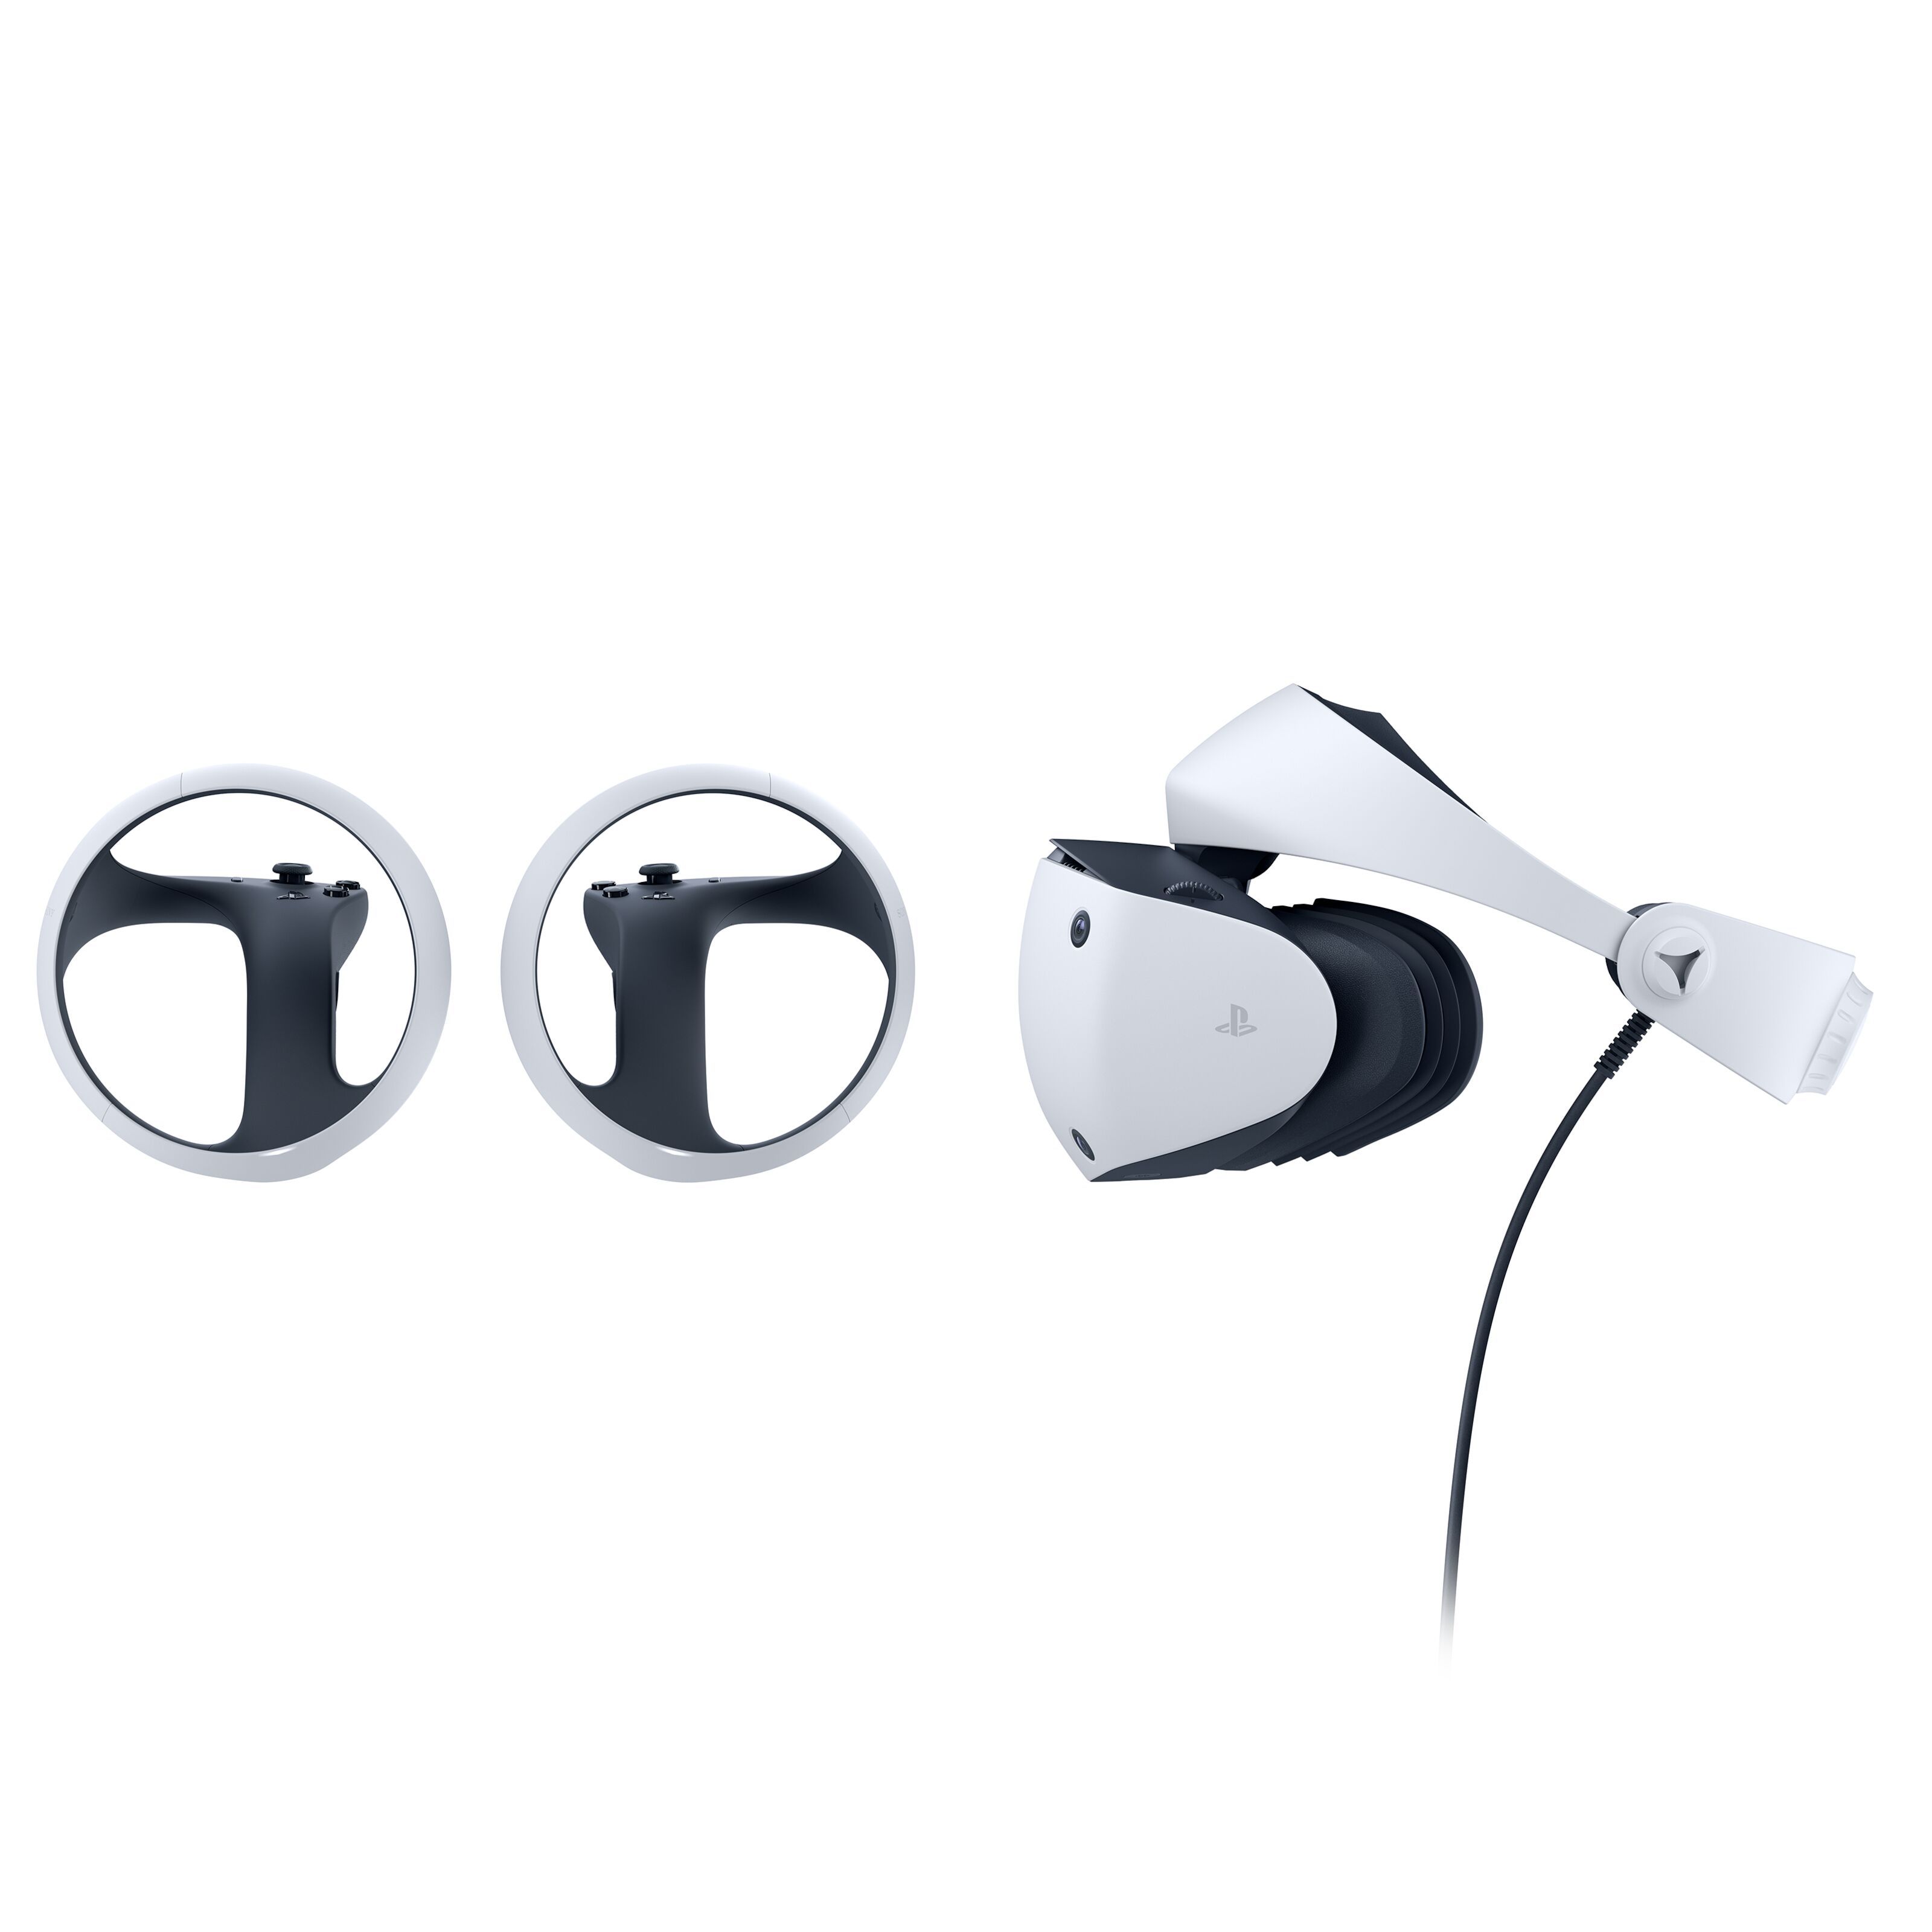 Sony PlayStation VR2-headset - Playstation 5 | Kjell.com